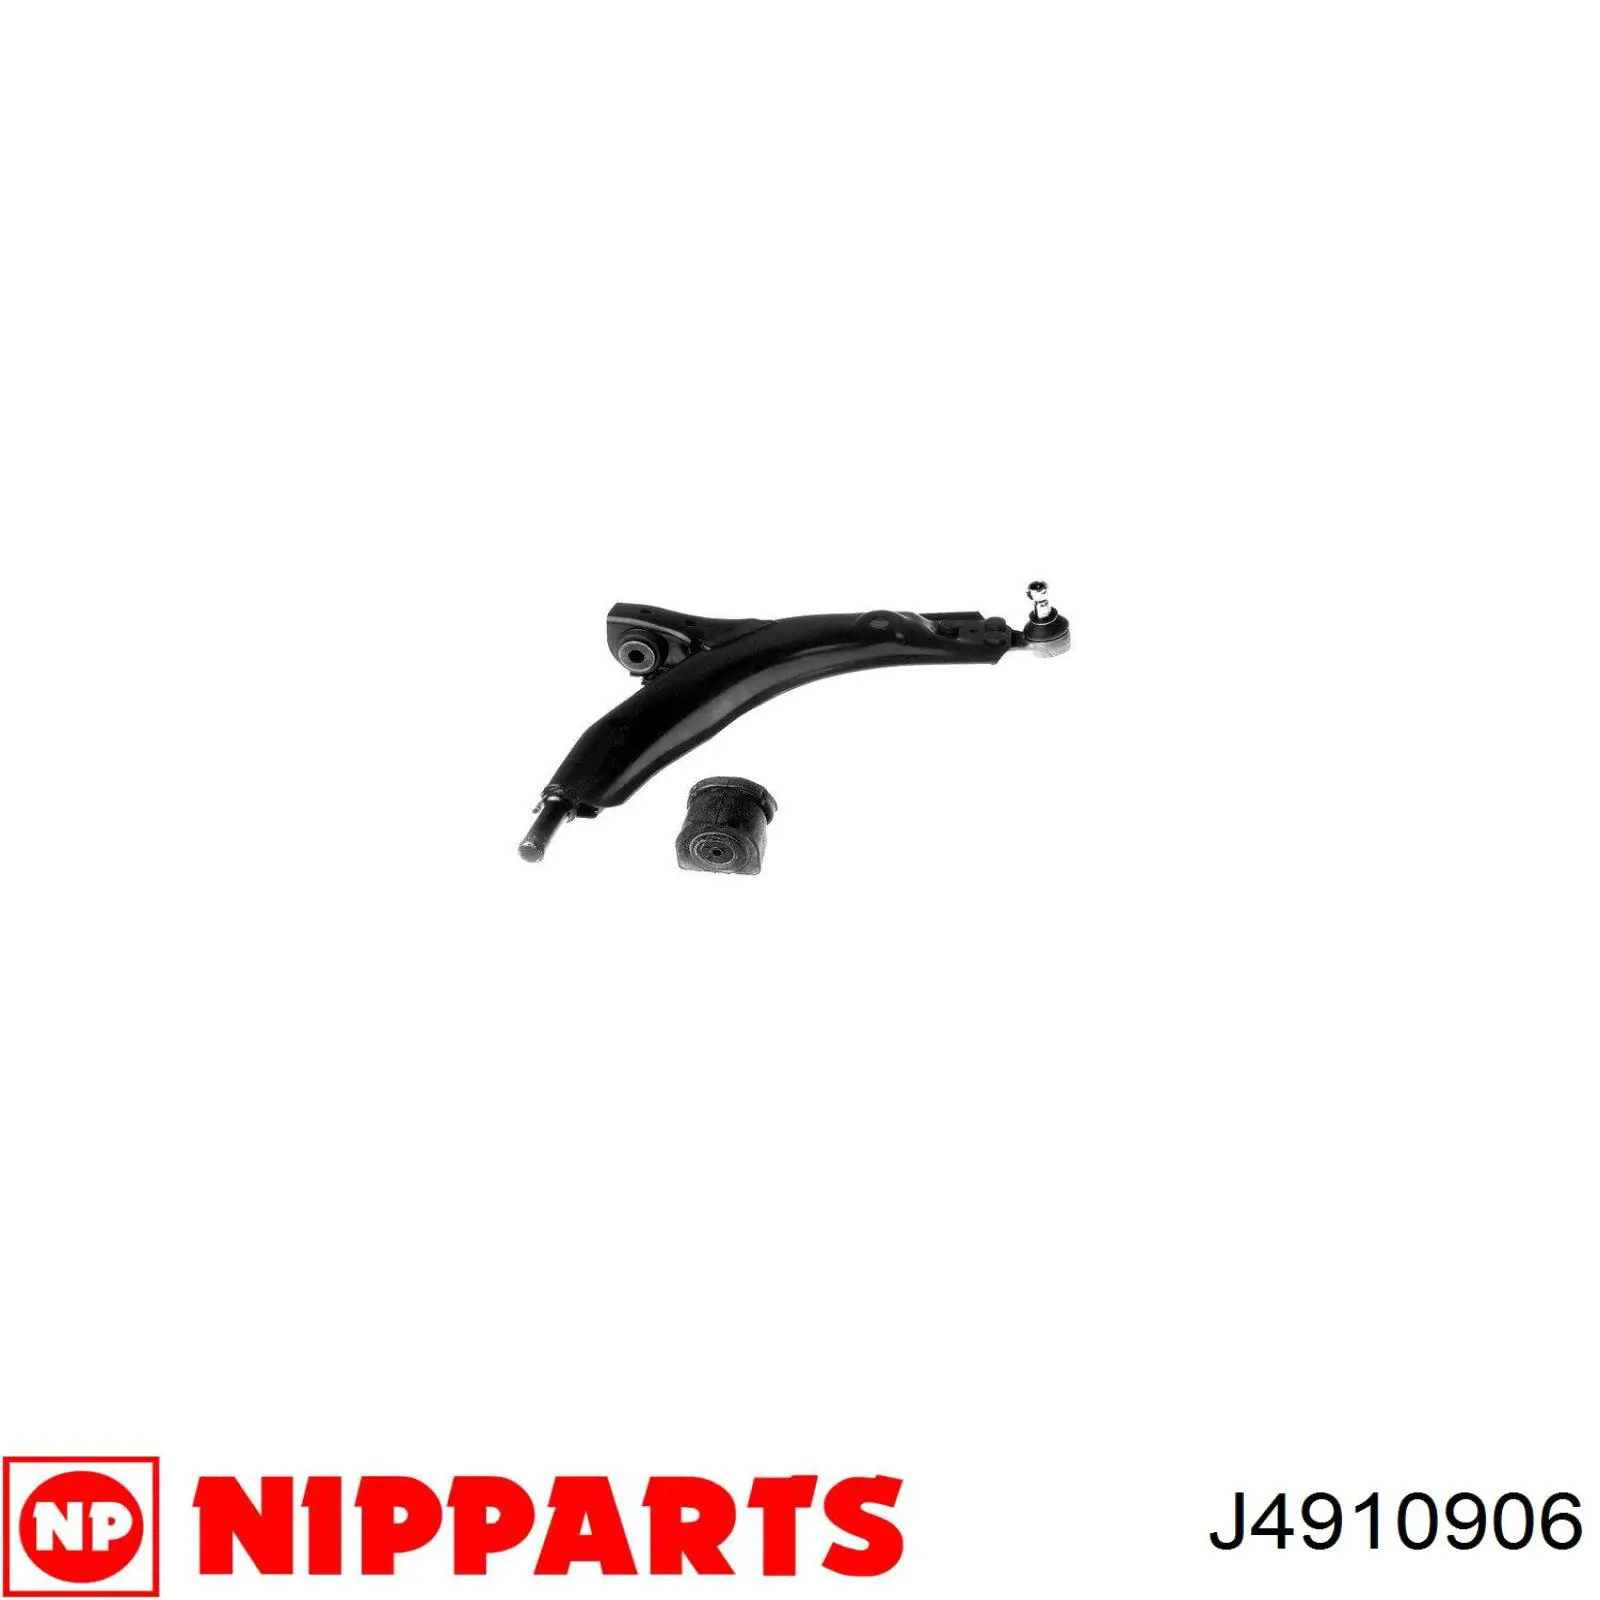 J4910906 Nipparts barra oscilante, suspensión de ruedas delantera, inferior derecha